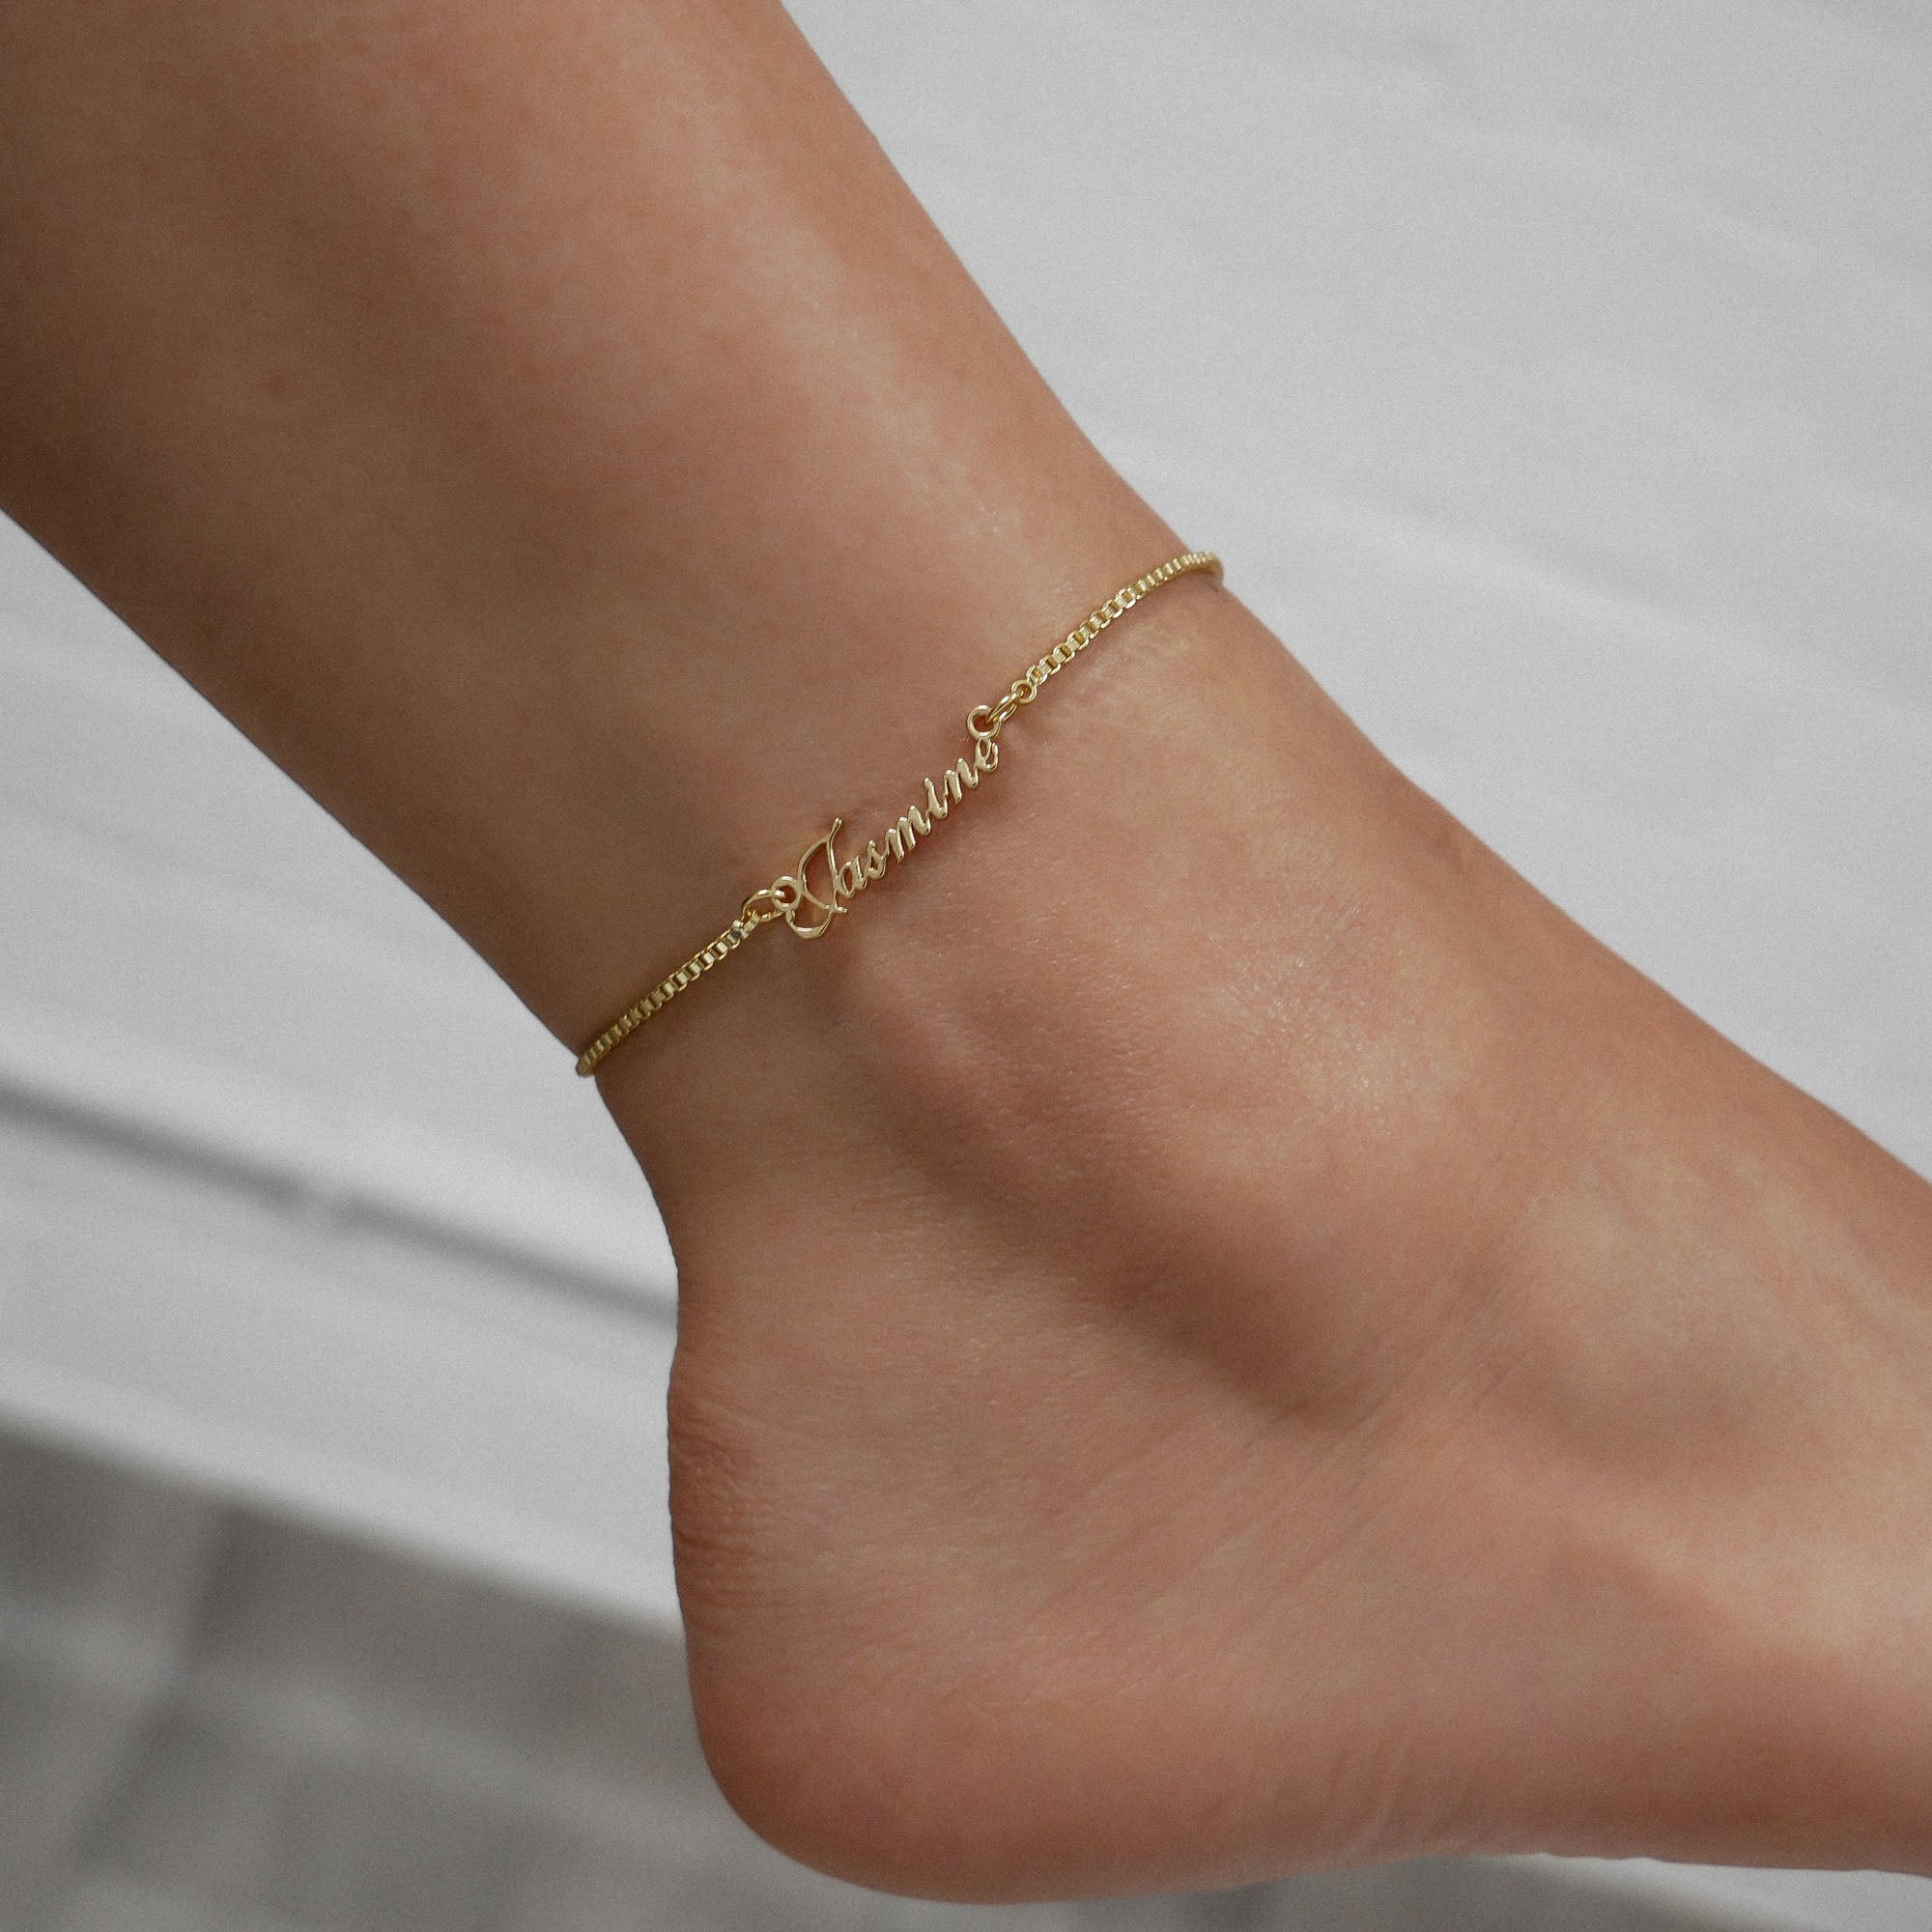 Siena name anklet  in gold